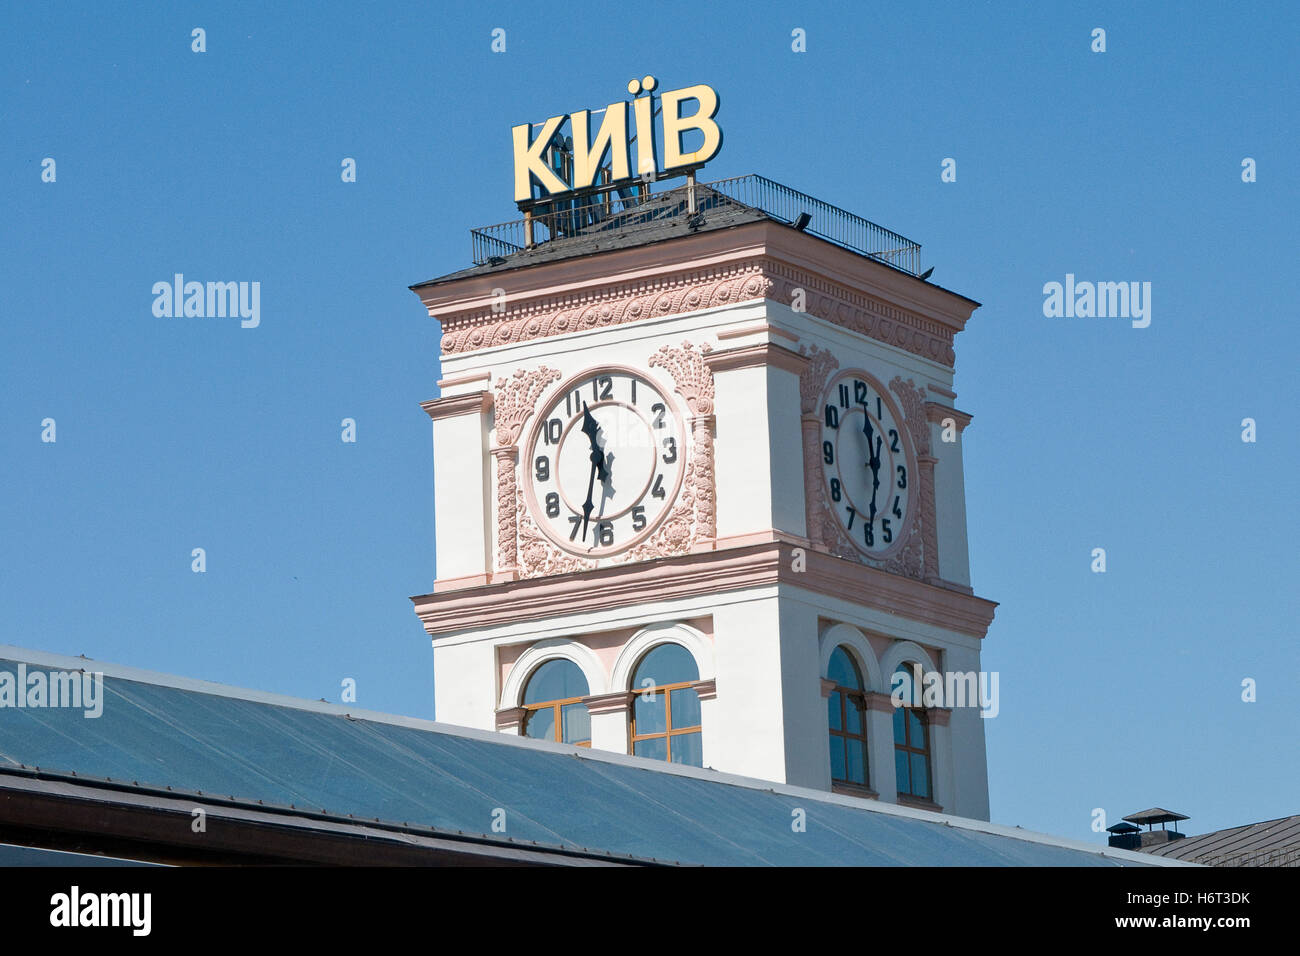 bussbahnhof in kiev Stock Photo